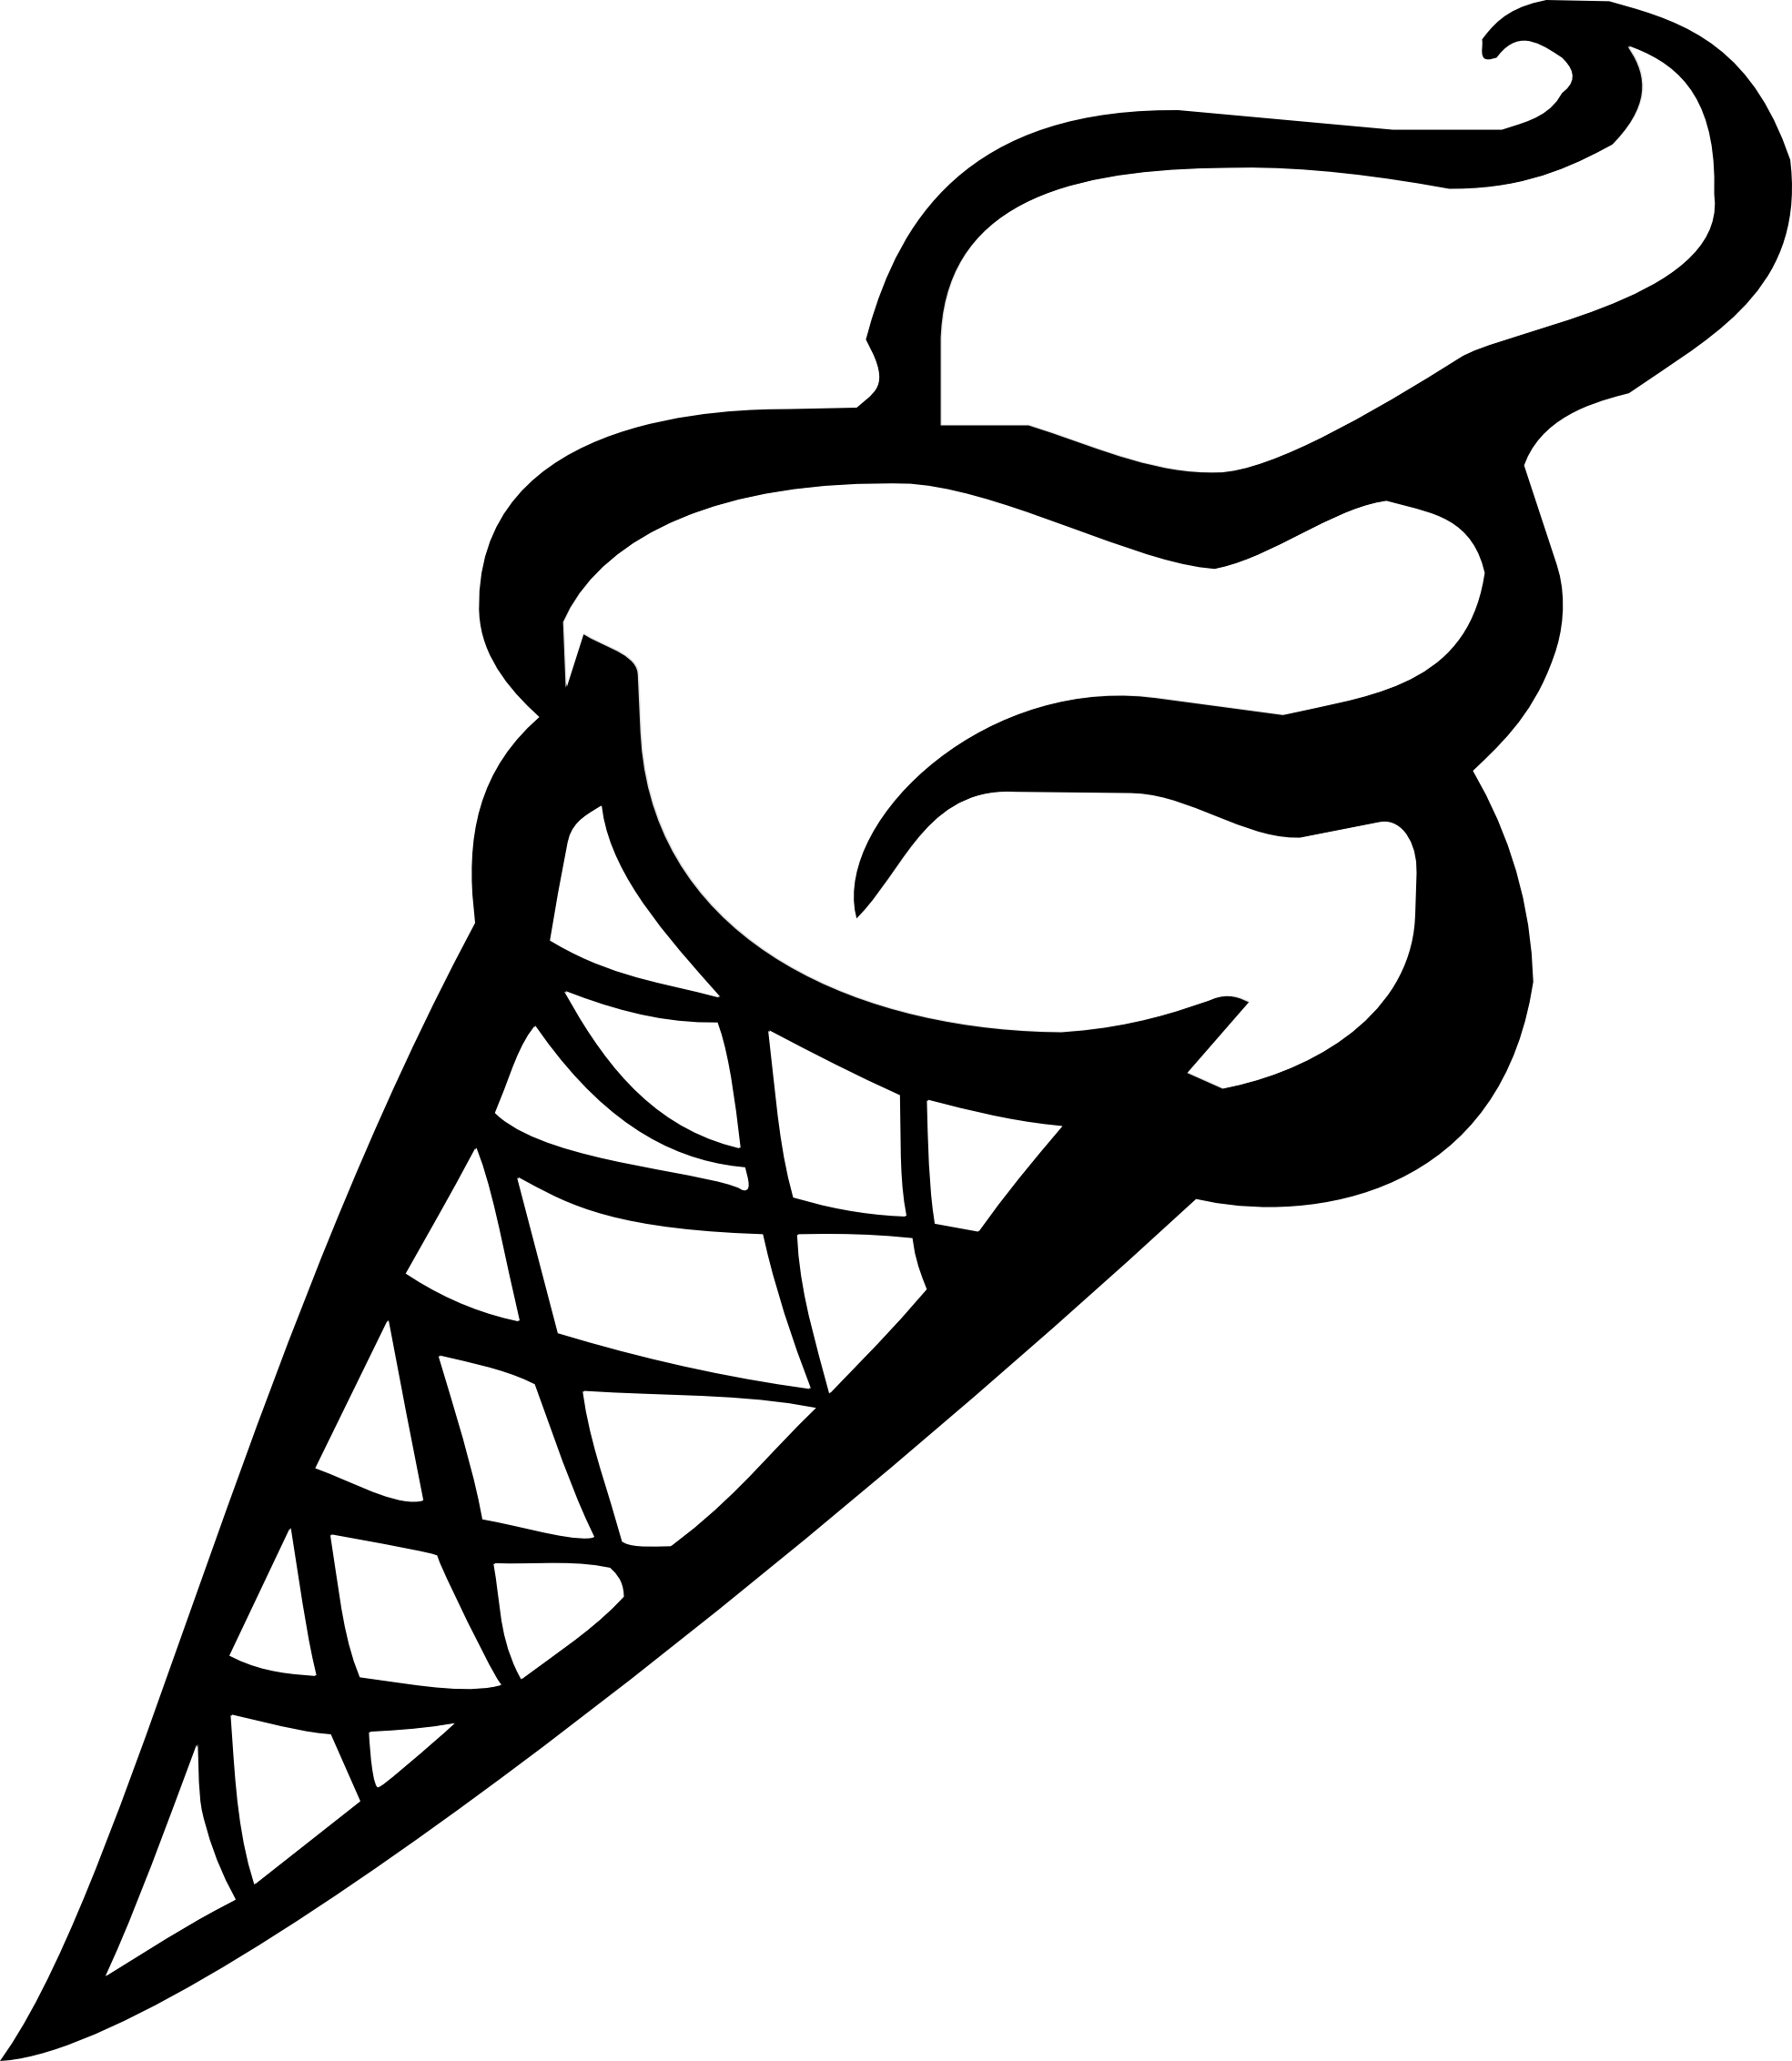 Ice cream cone clip art free